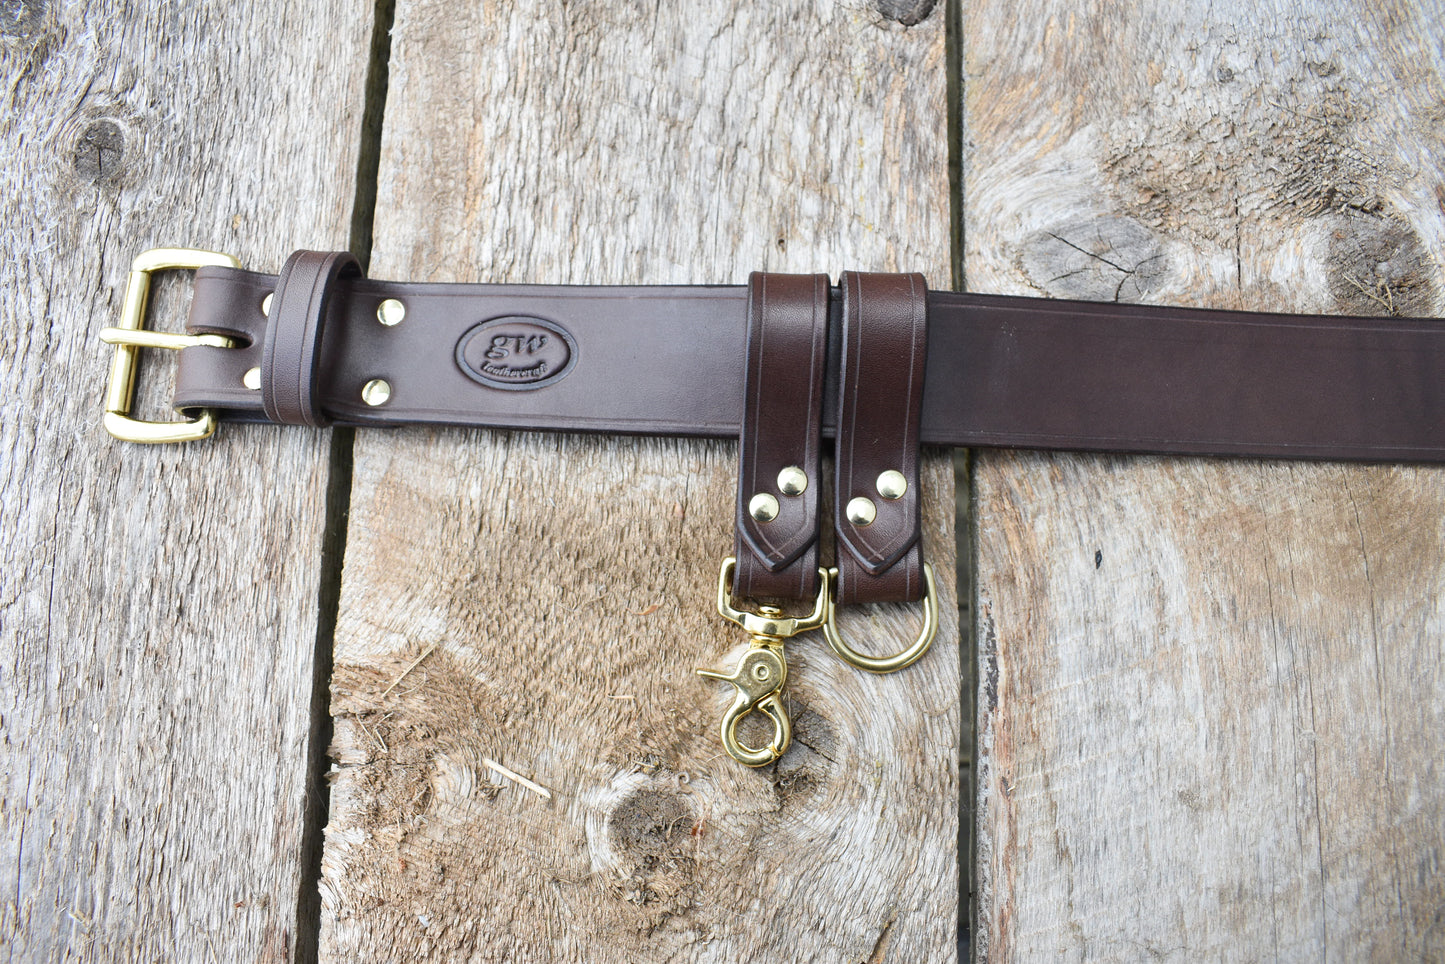 Leather Utility Belt, Bushcraft Gear Belt, Archery Belt, 2 inch wide Leather Belt, with 2 Belt Danglers